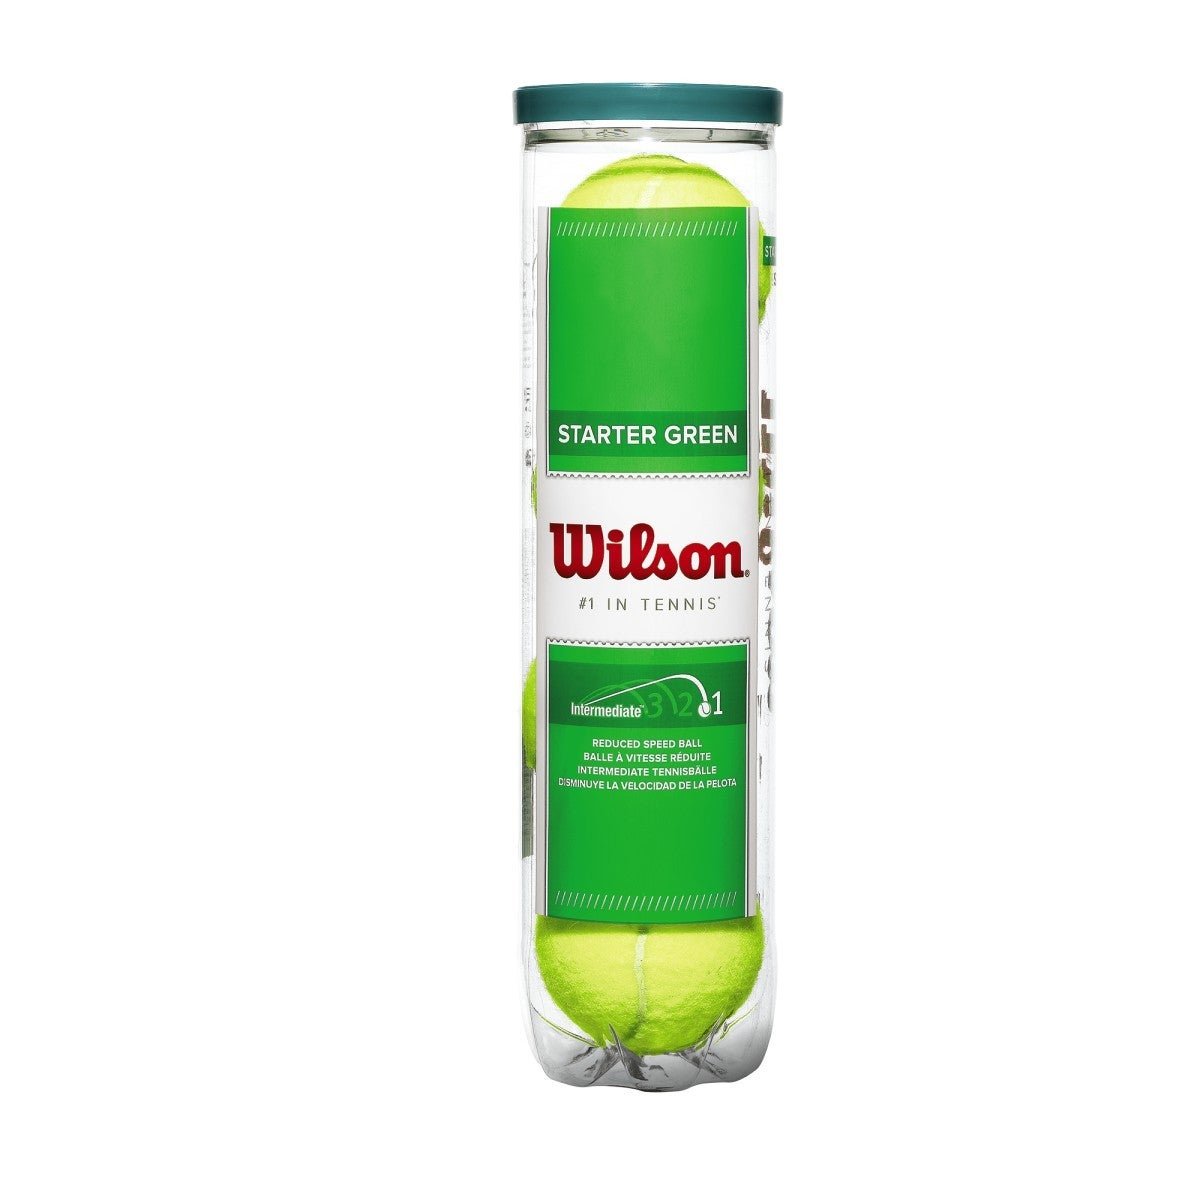 Wilson Starter Green Tennis Balls x 4